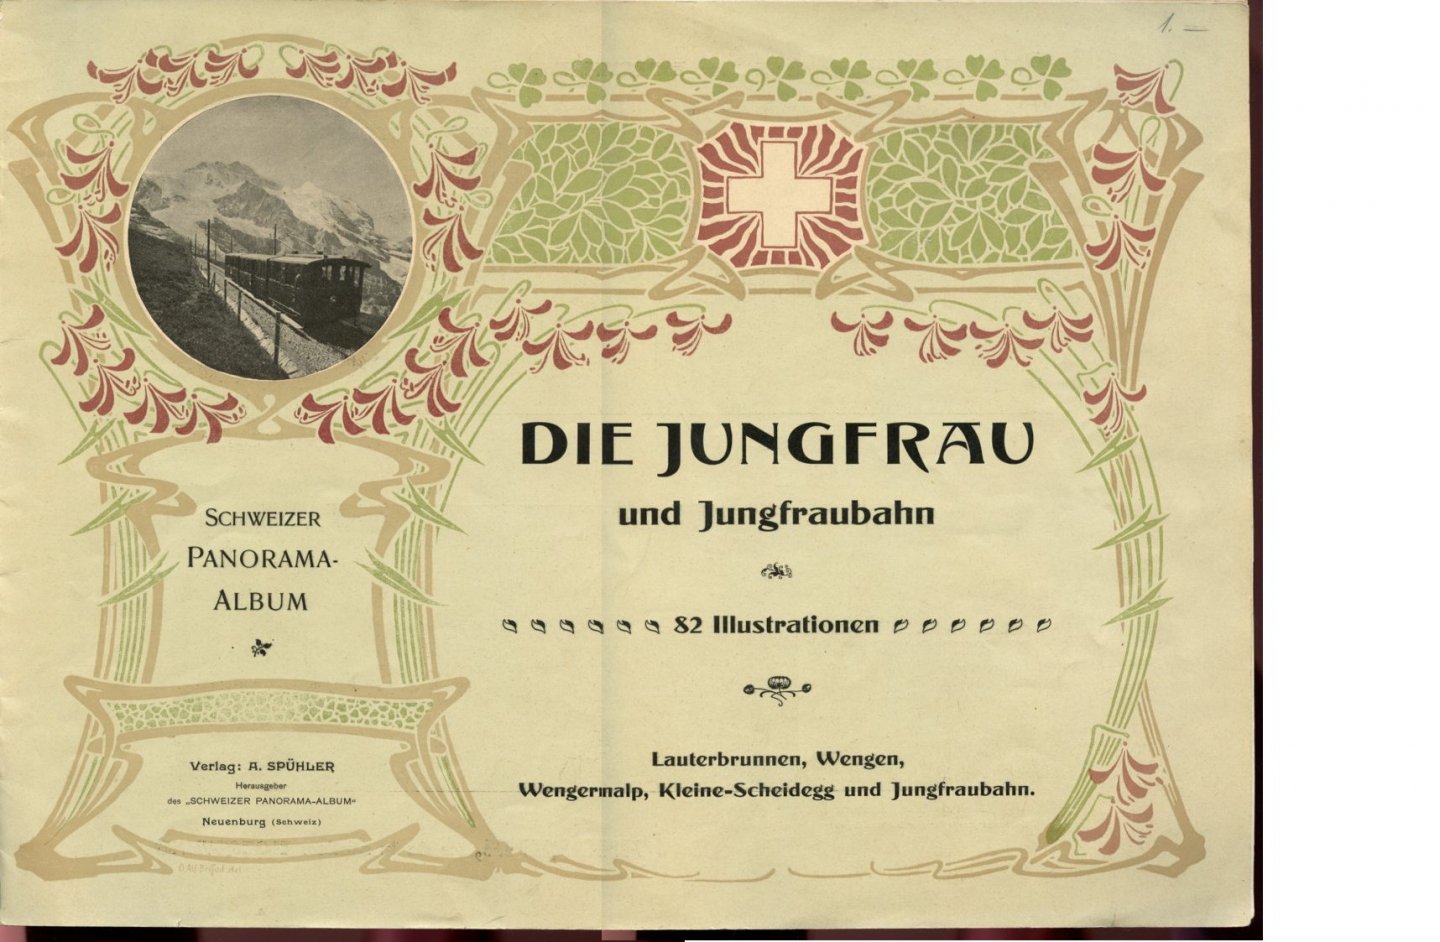 -- - Die Jungfrau und Jungfraubahn. 92 Illustrationen. Lauterbrunnen, Wengen, Wengernalp, Kleine-Scheidegg und Jungfraubahn